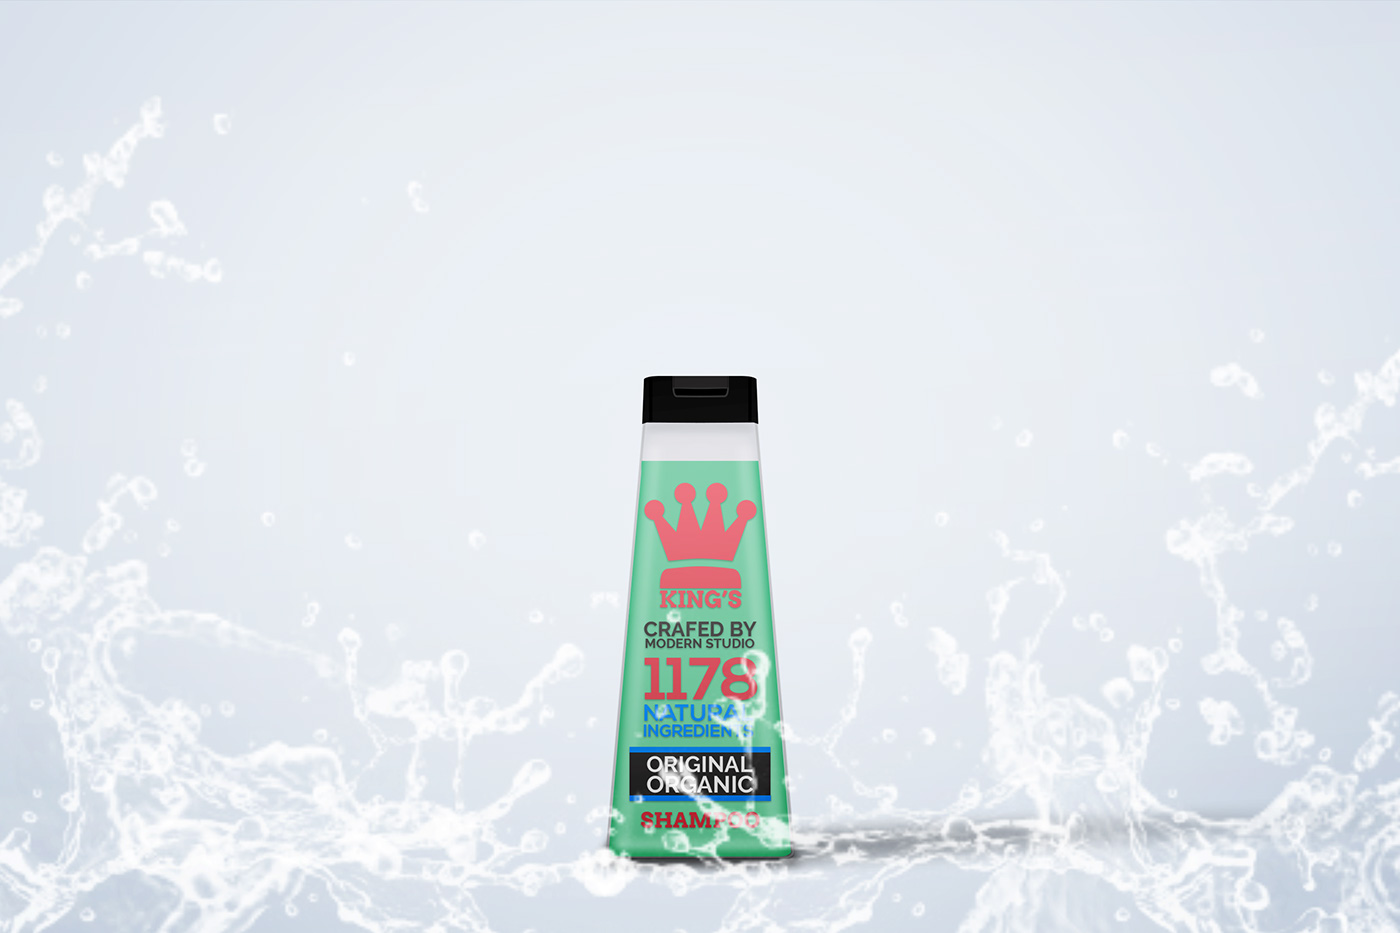 shampoo gel shower gel bottle Packaging Mockup psd realistic